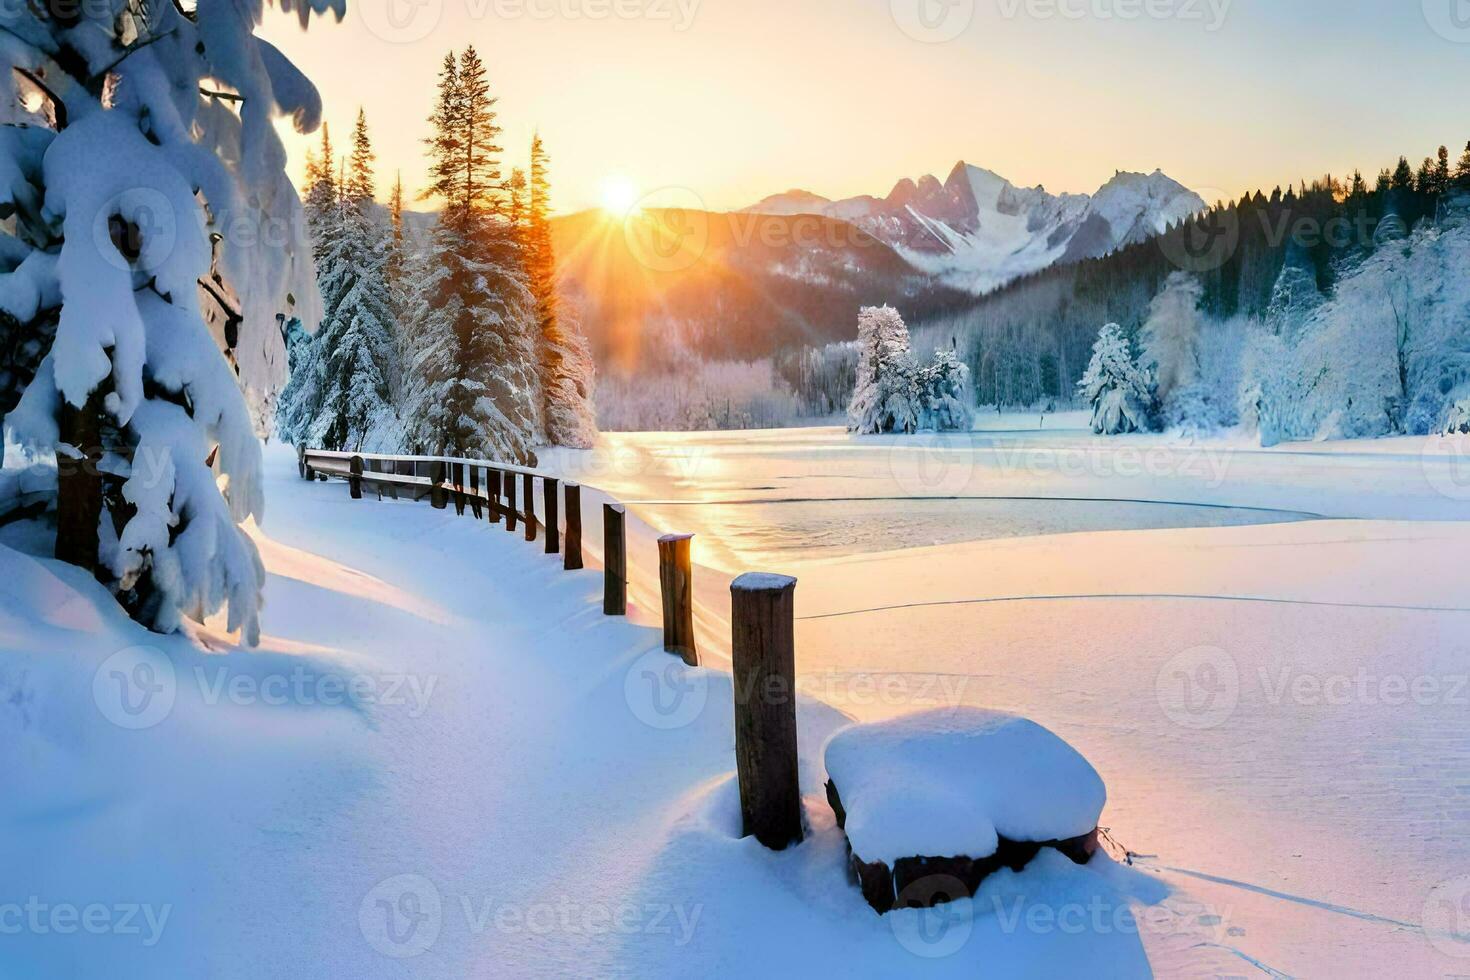 Besen Auf Dem Schnee Im Winter Stockbild - Bild von reinigung, schneefälle:  140180781